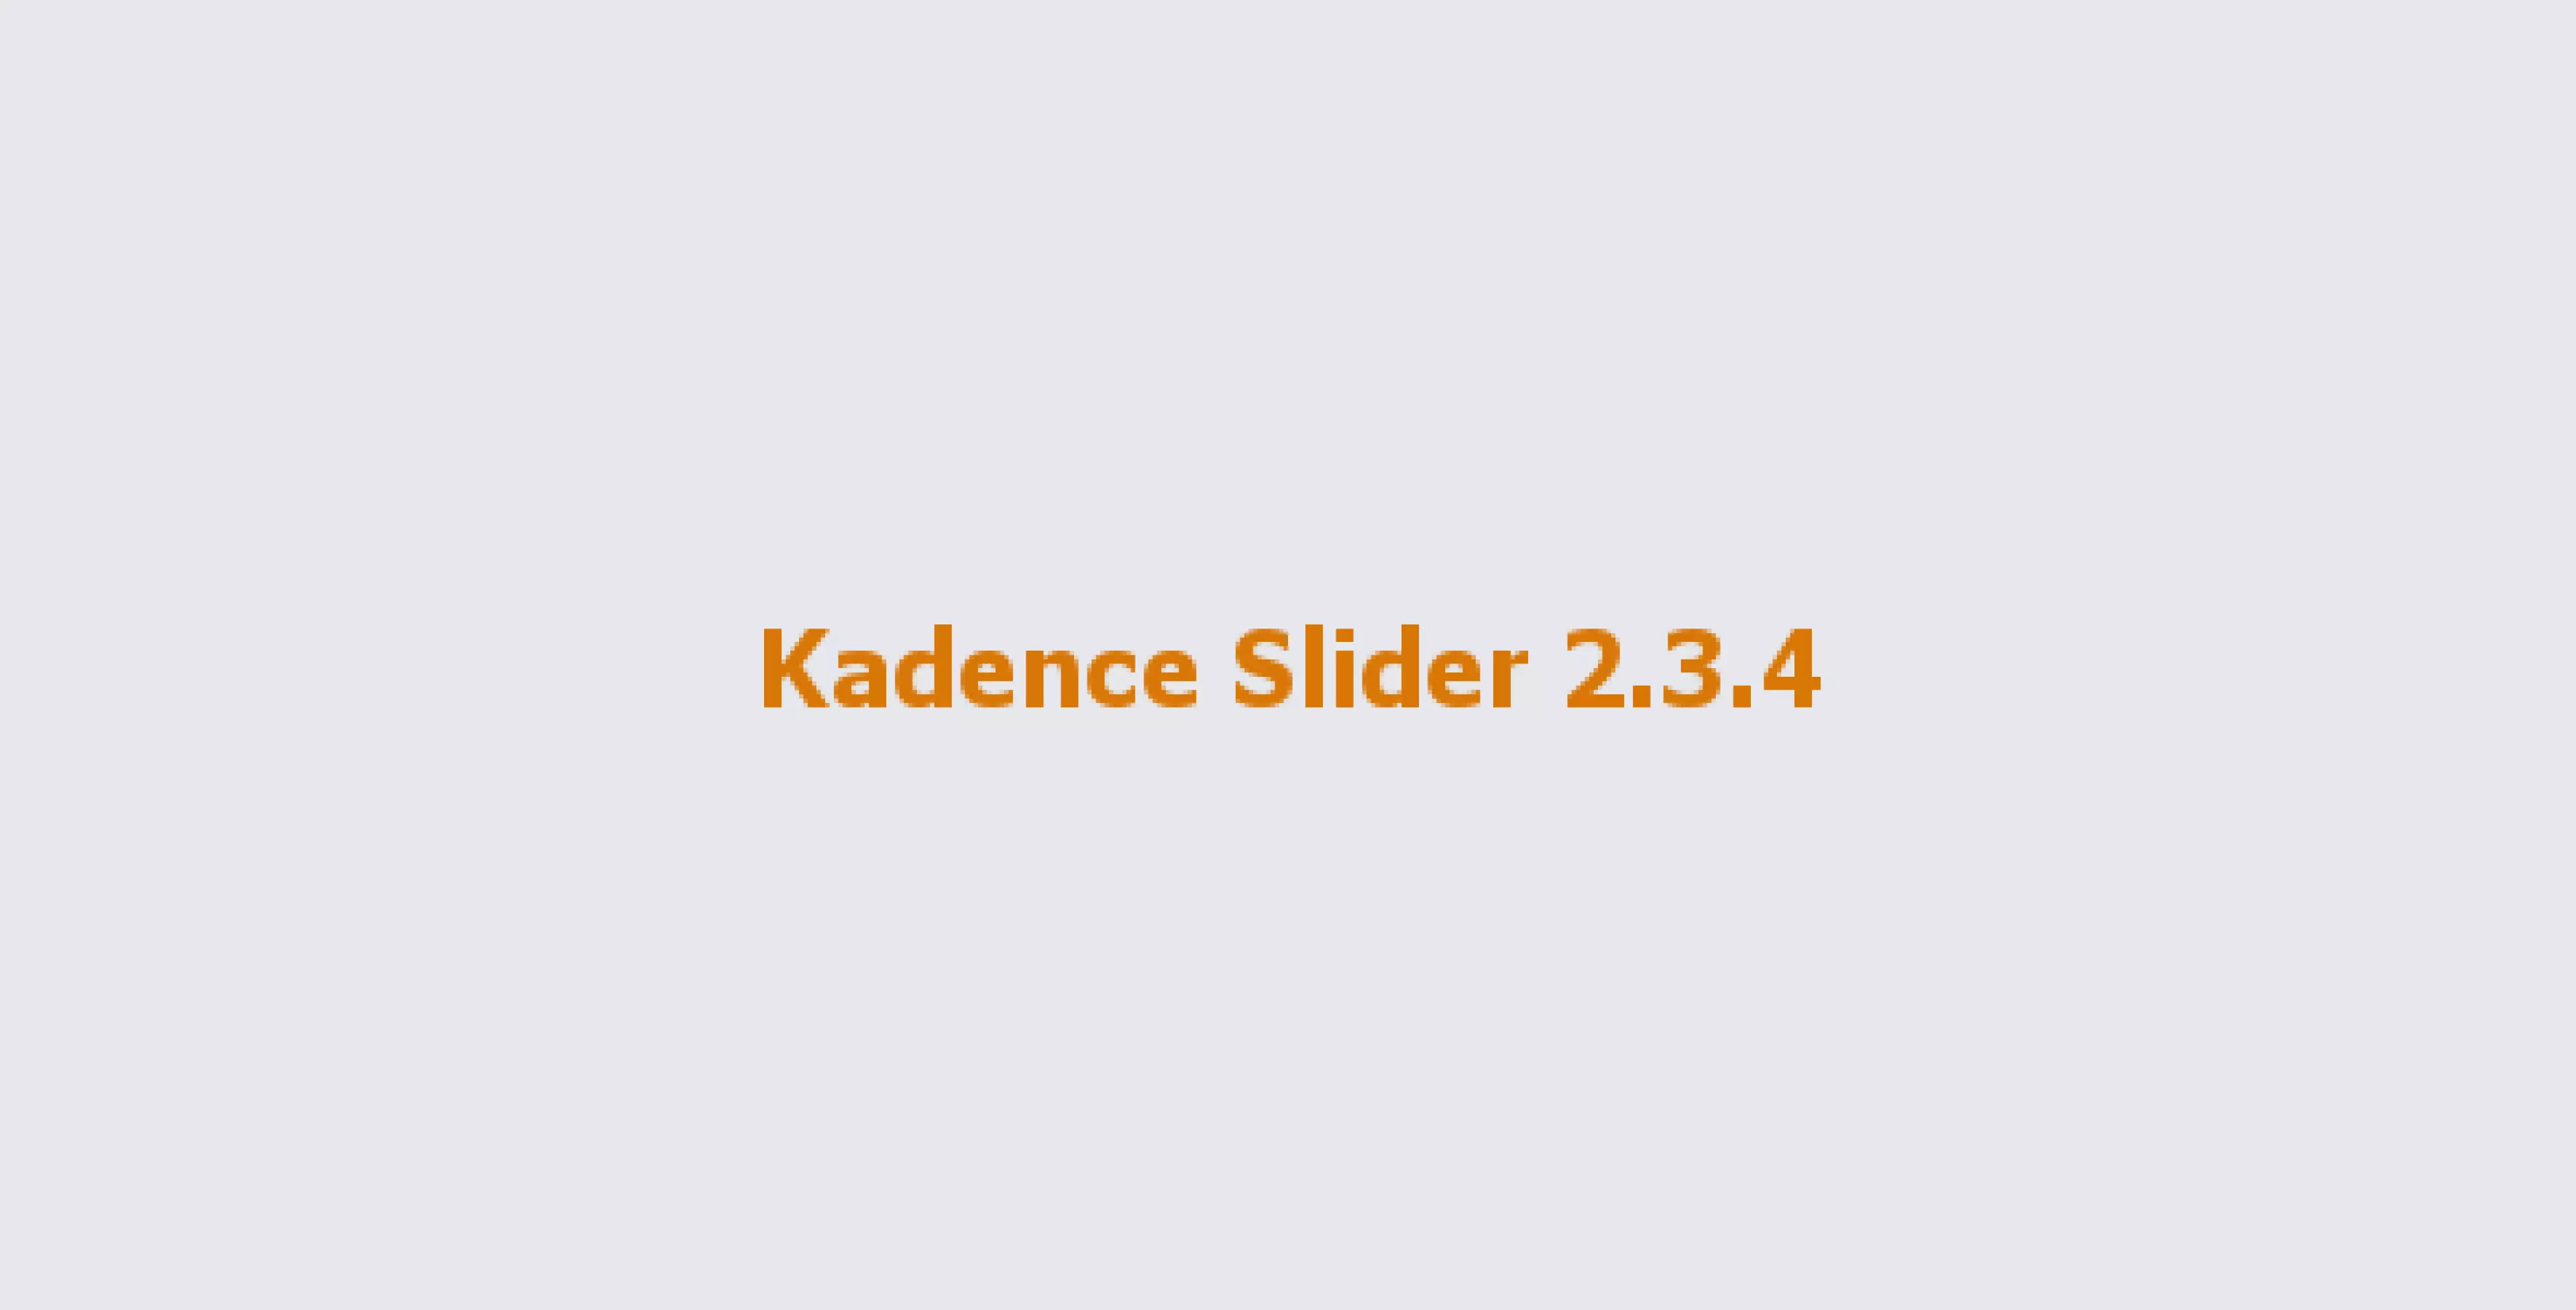 Kadence Slider